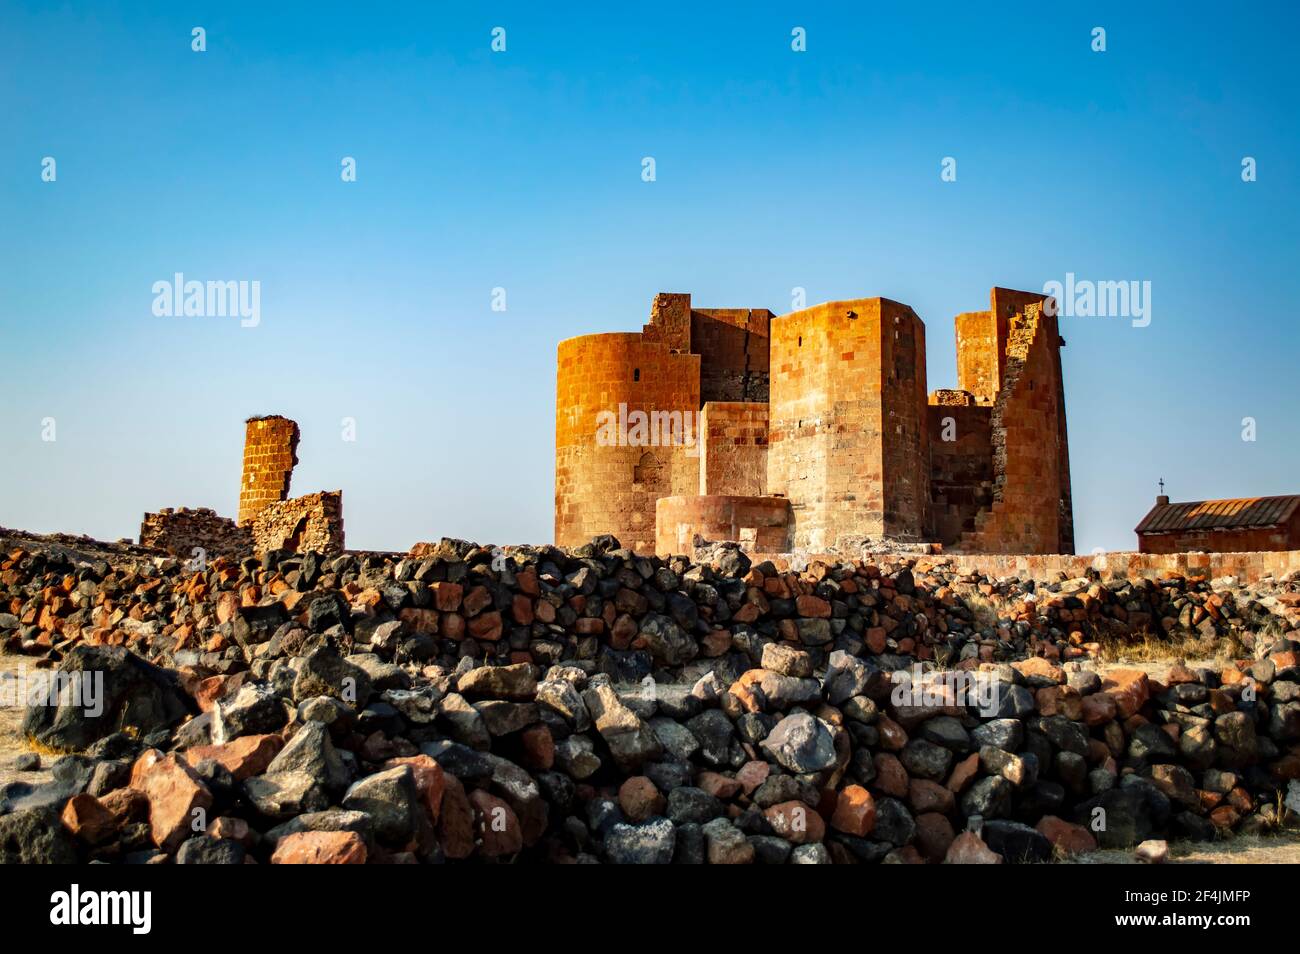 Ruines de la forteresse de Dashtadem en Arménie, située dans le village de Dashtadem de la province d'Aragatsotn Banque D'Images